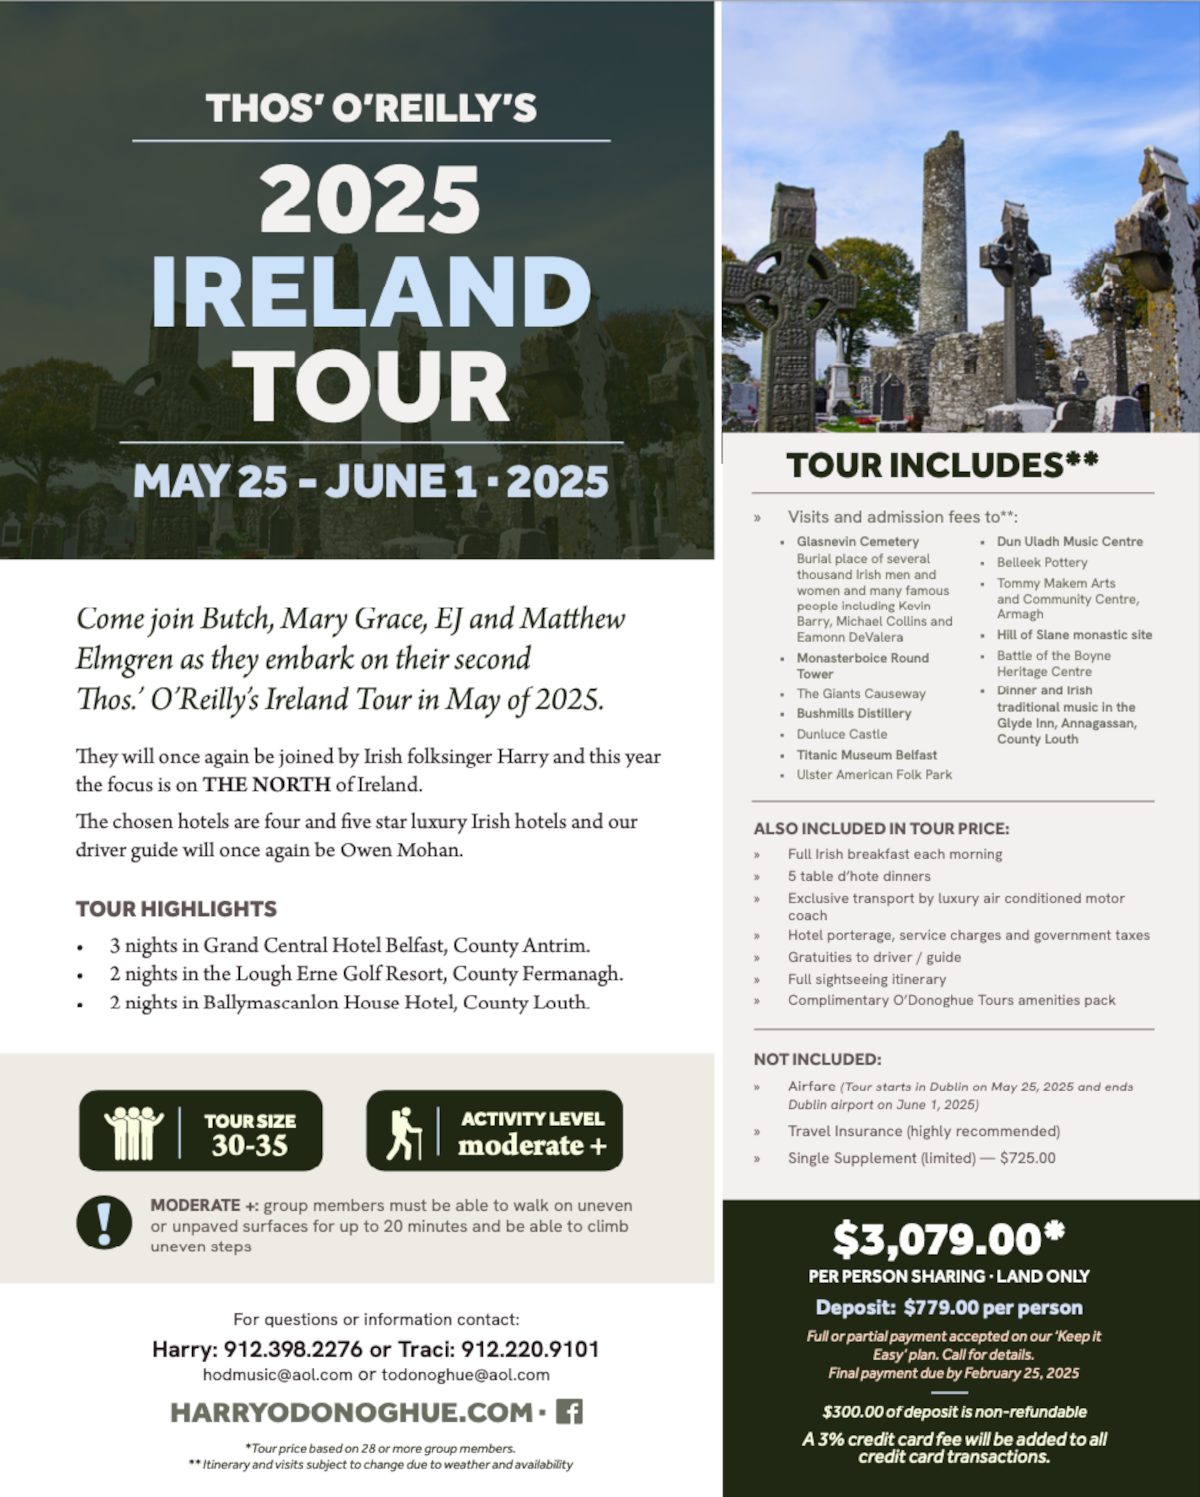 2025 Ireland tour.

